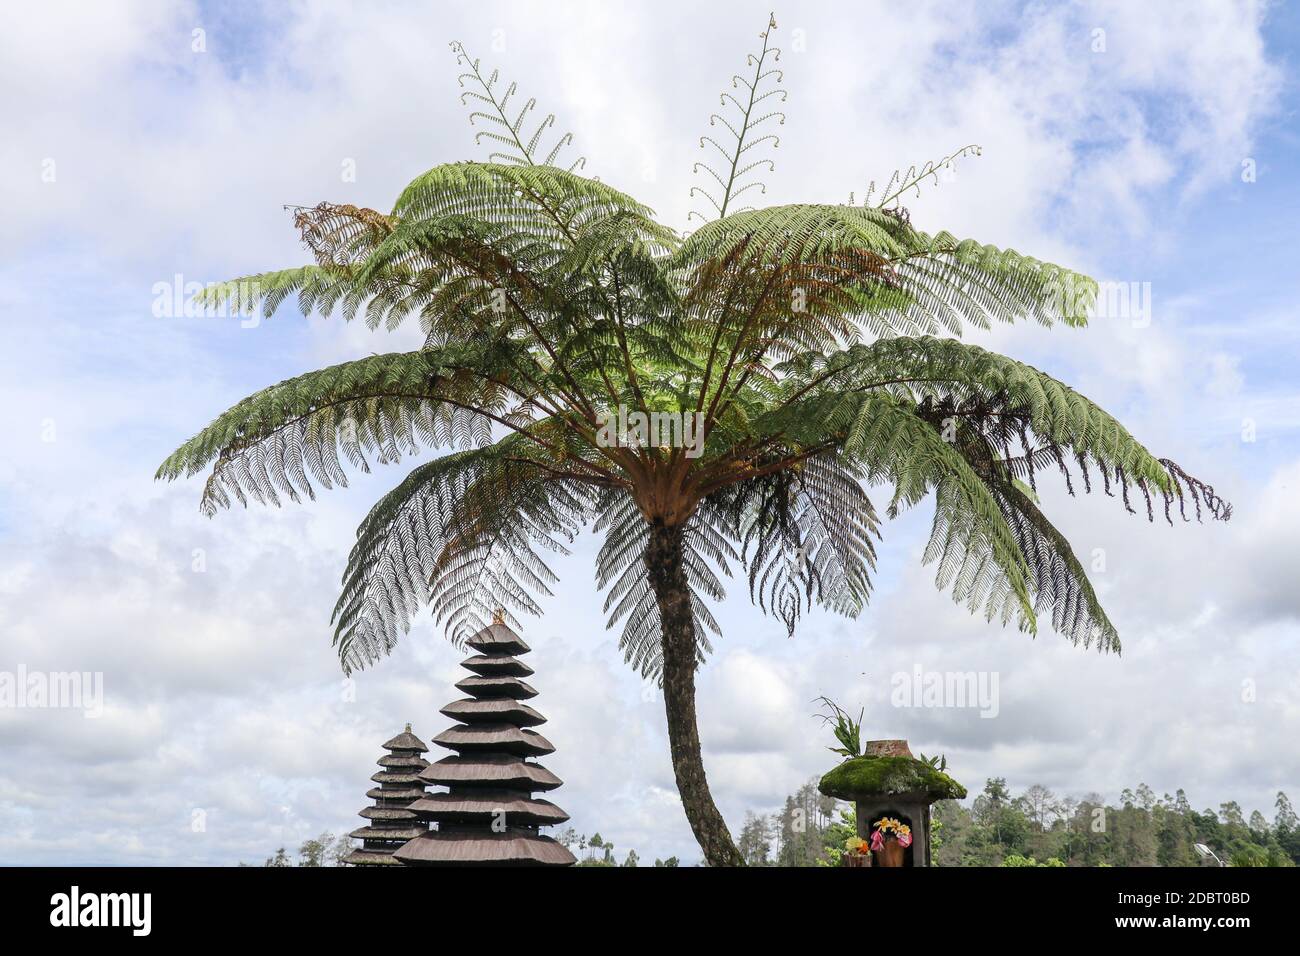 Bunte balinesische Landschaft mit einem Tempel. Tempel in Pura Penataran Agung Besakih Komplex, der Muttertempel von Bali, Indonesien. Mehrere balinesische Tem Stockfoto